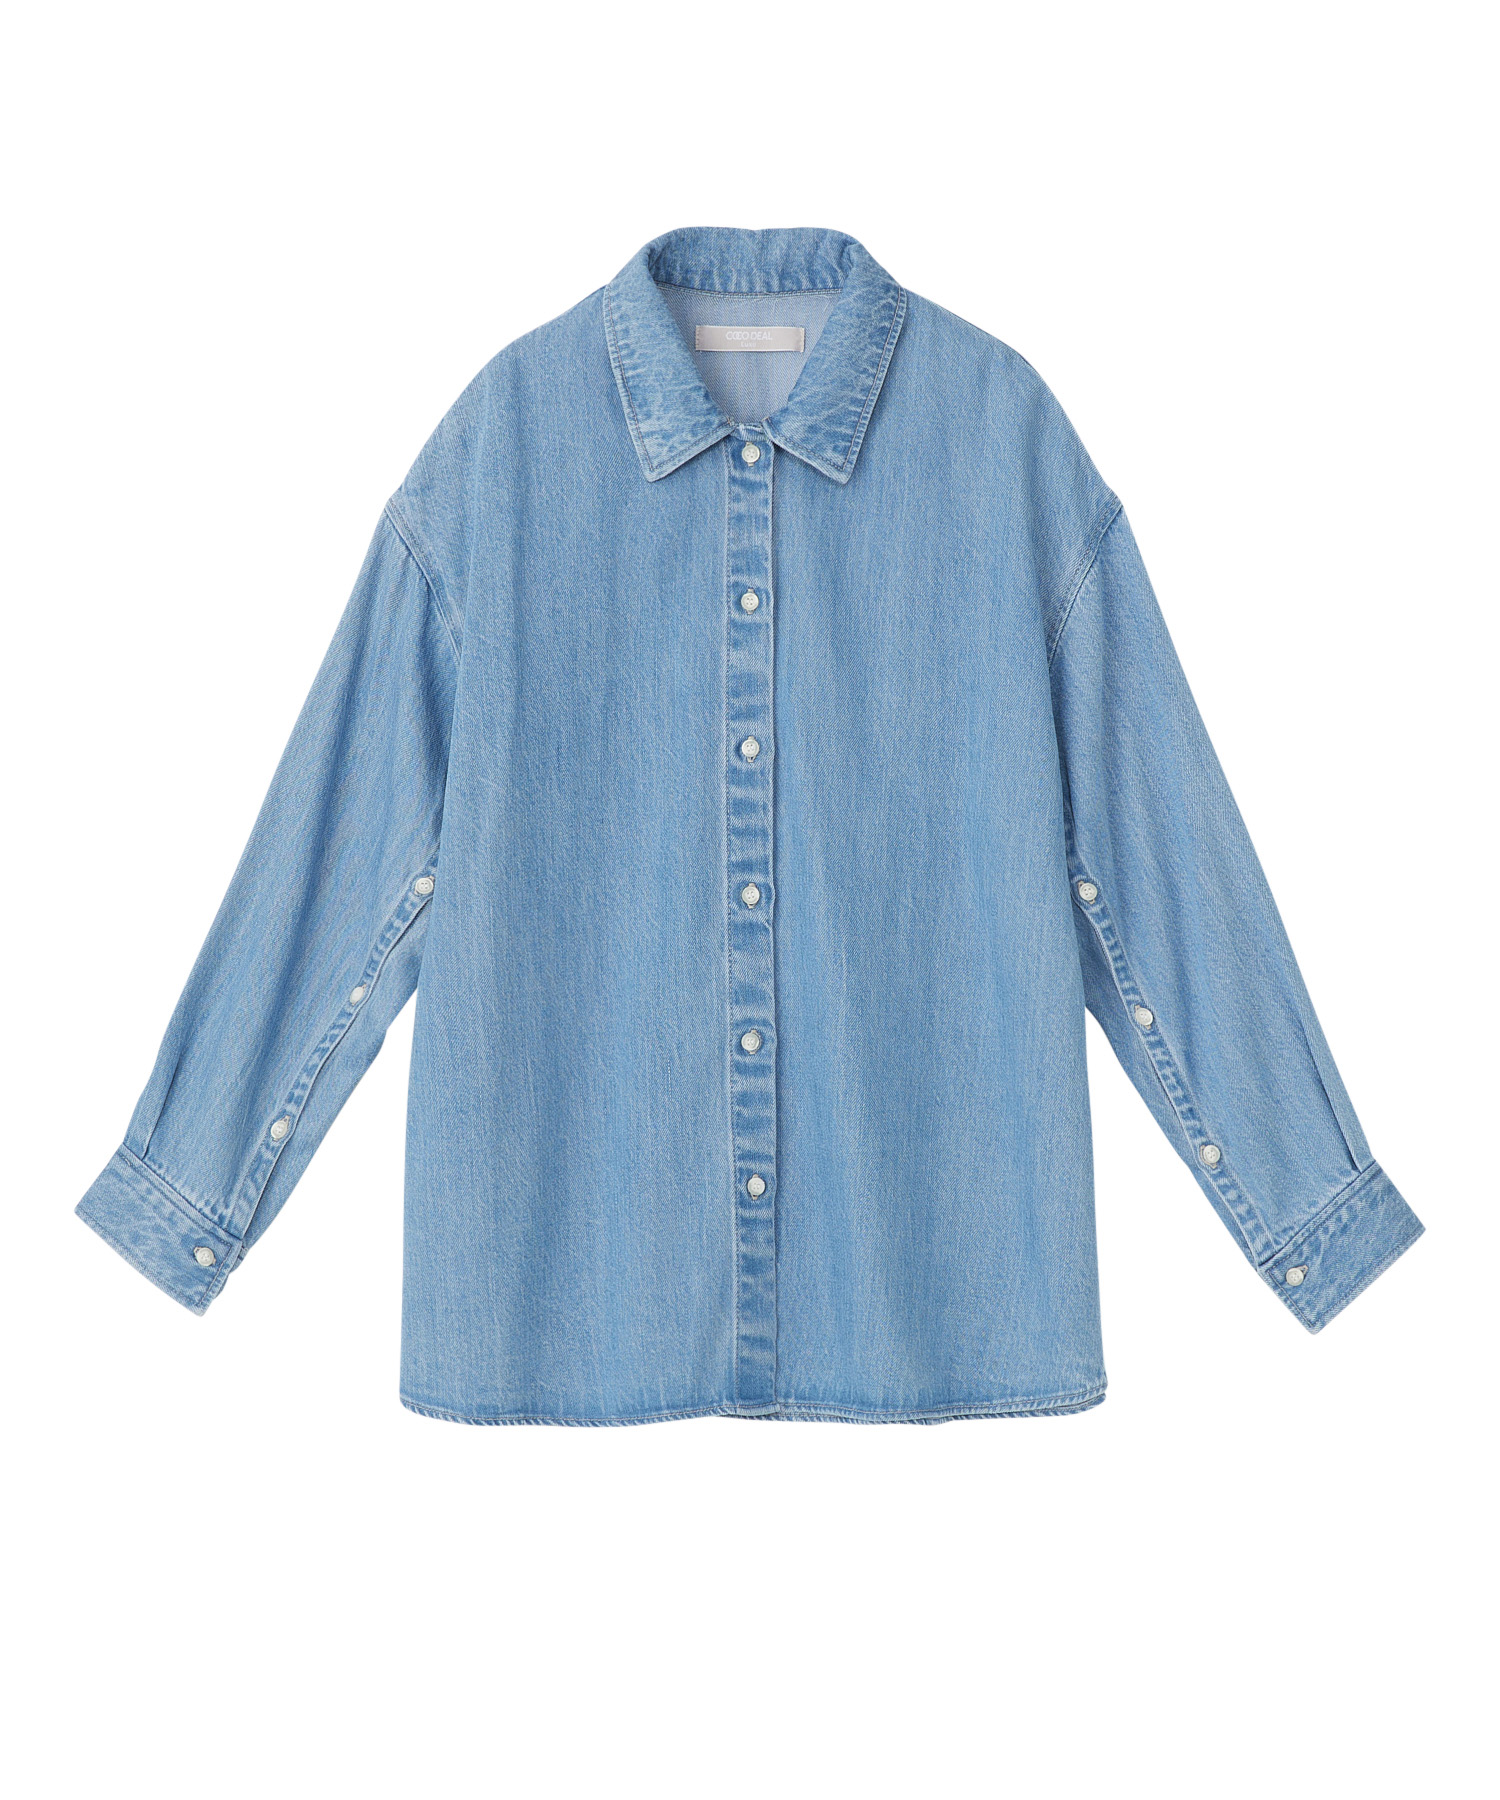 【新品・未使用】COCO DEAL カラーデニムシャツジャケット